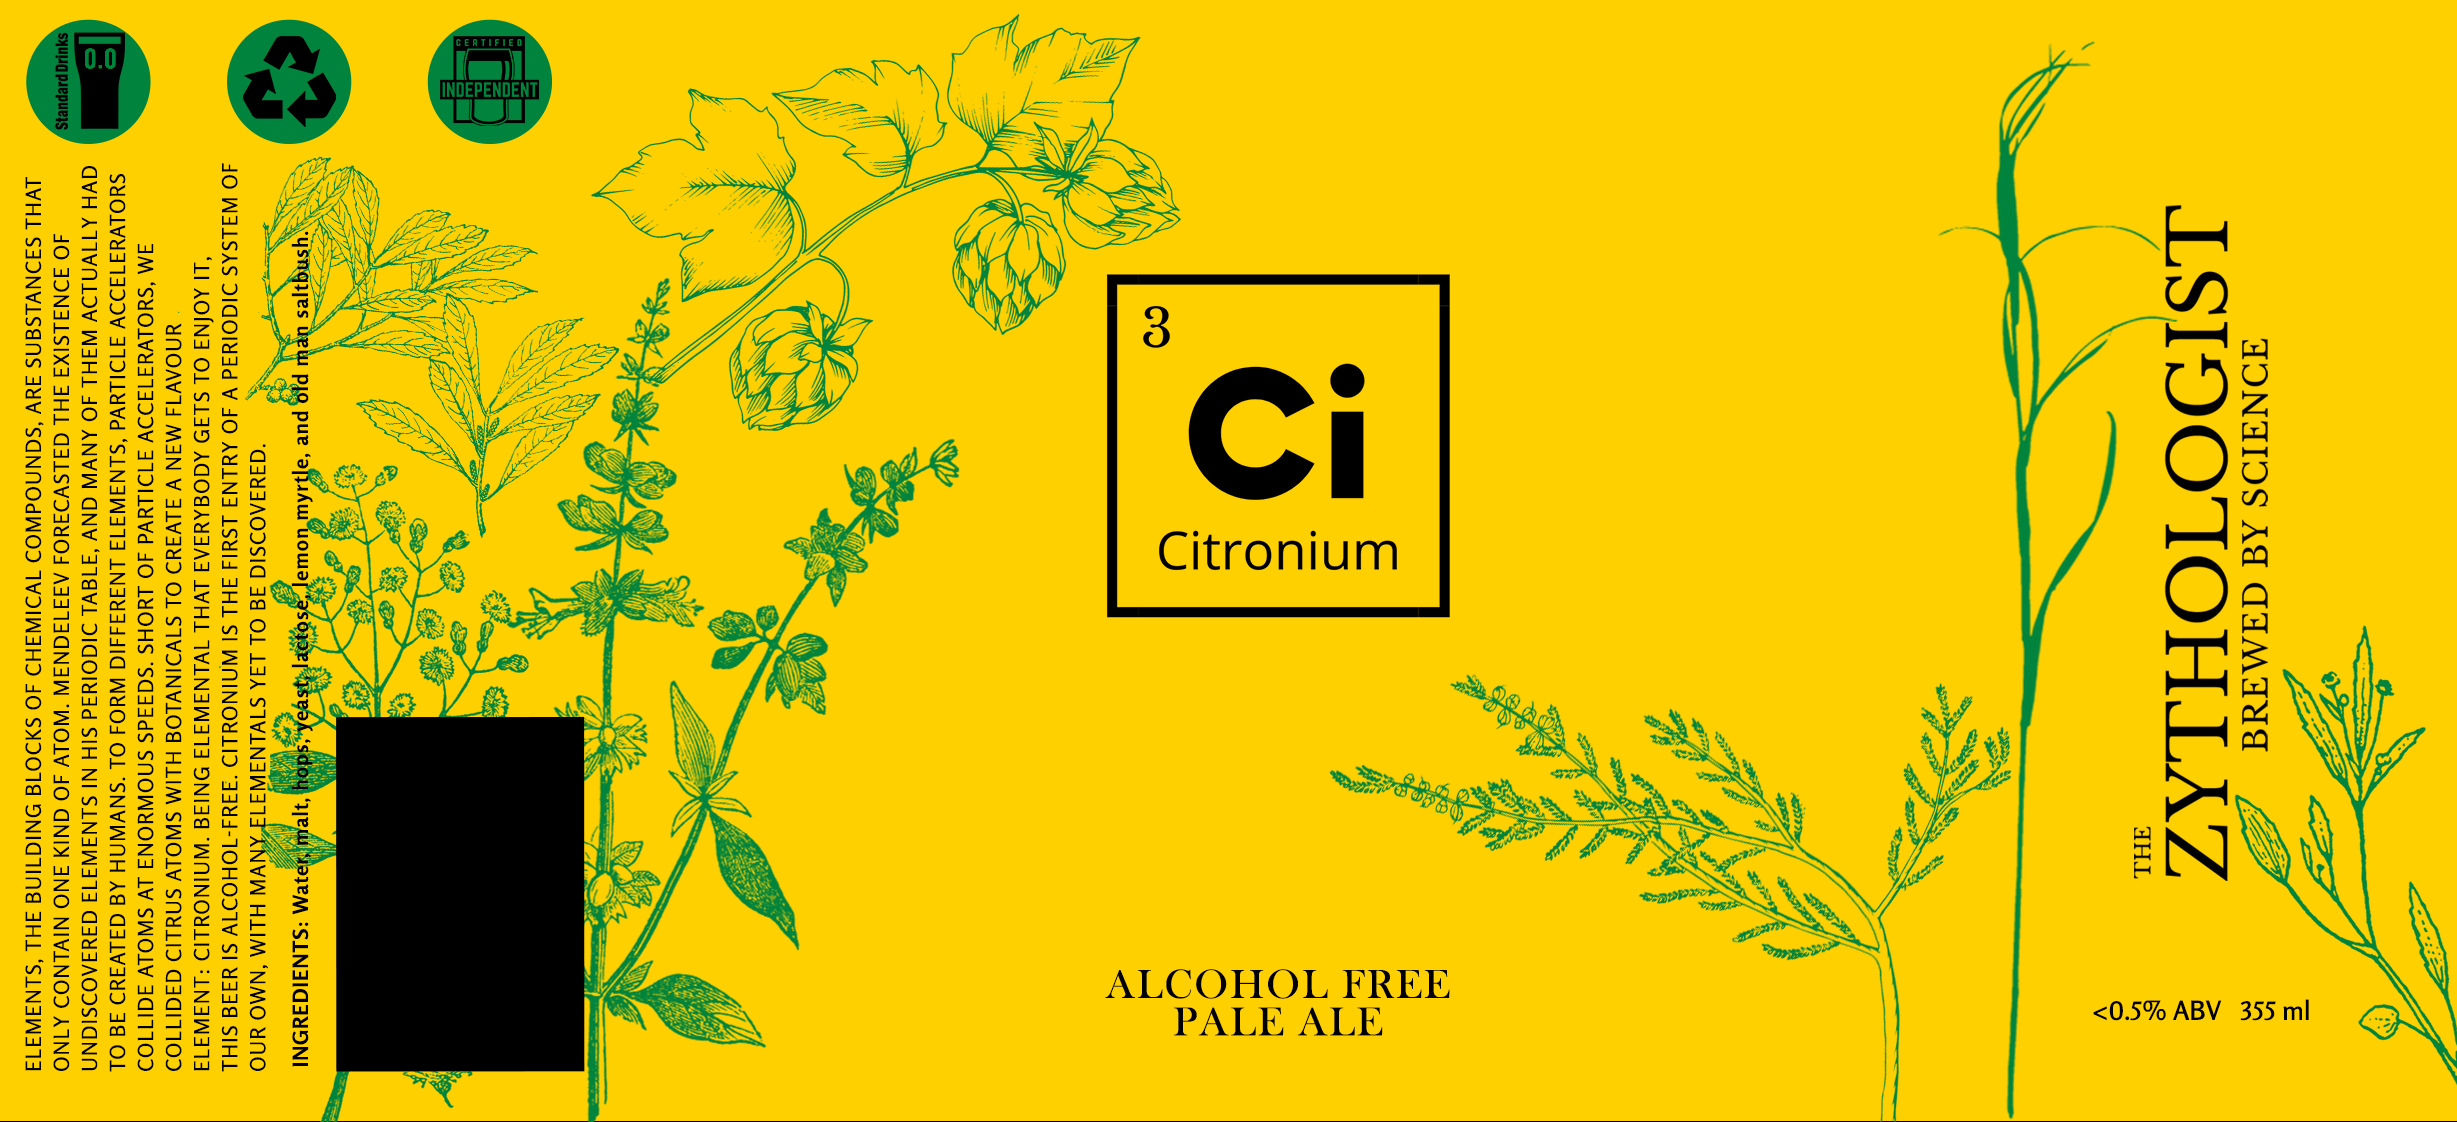 The Zythologist – Citronium